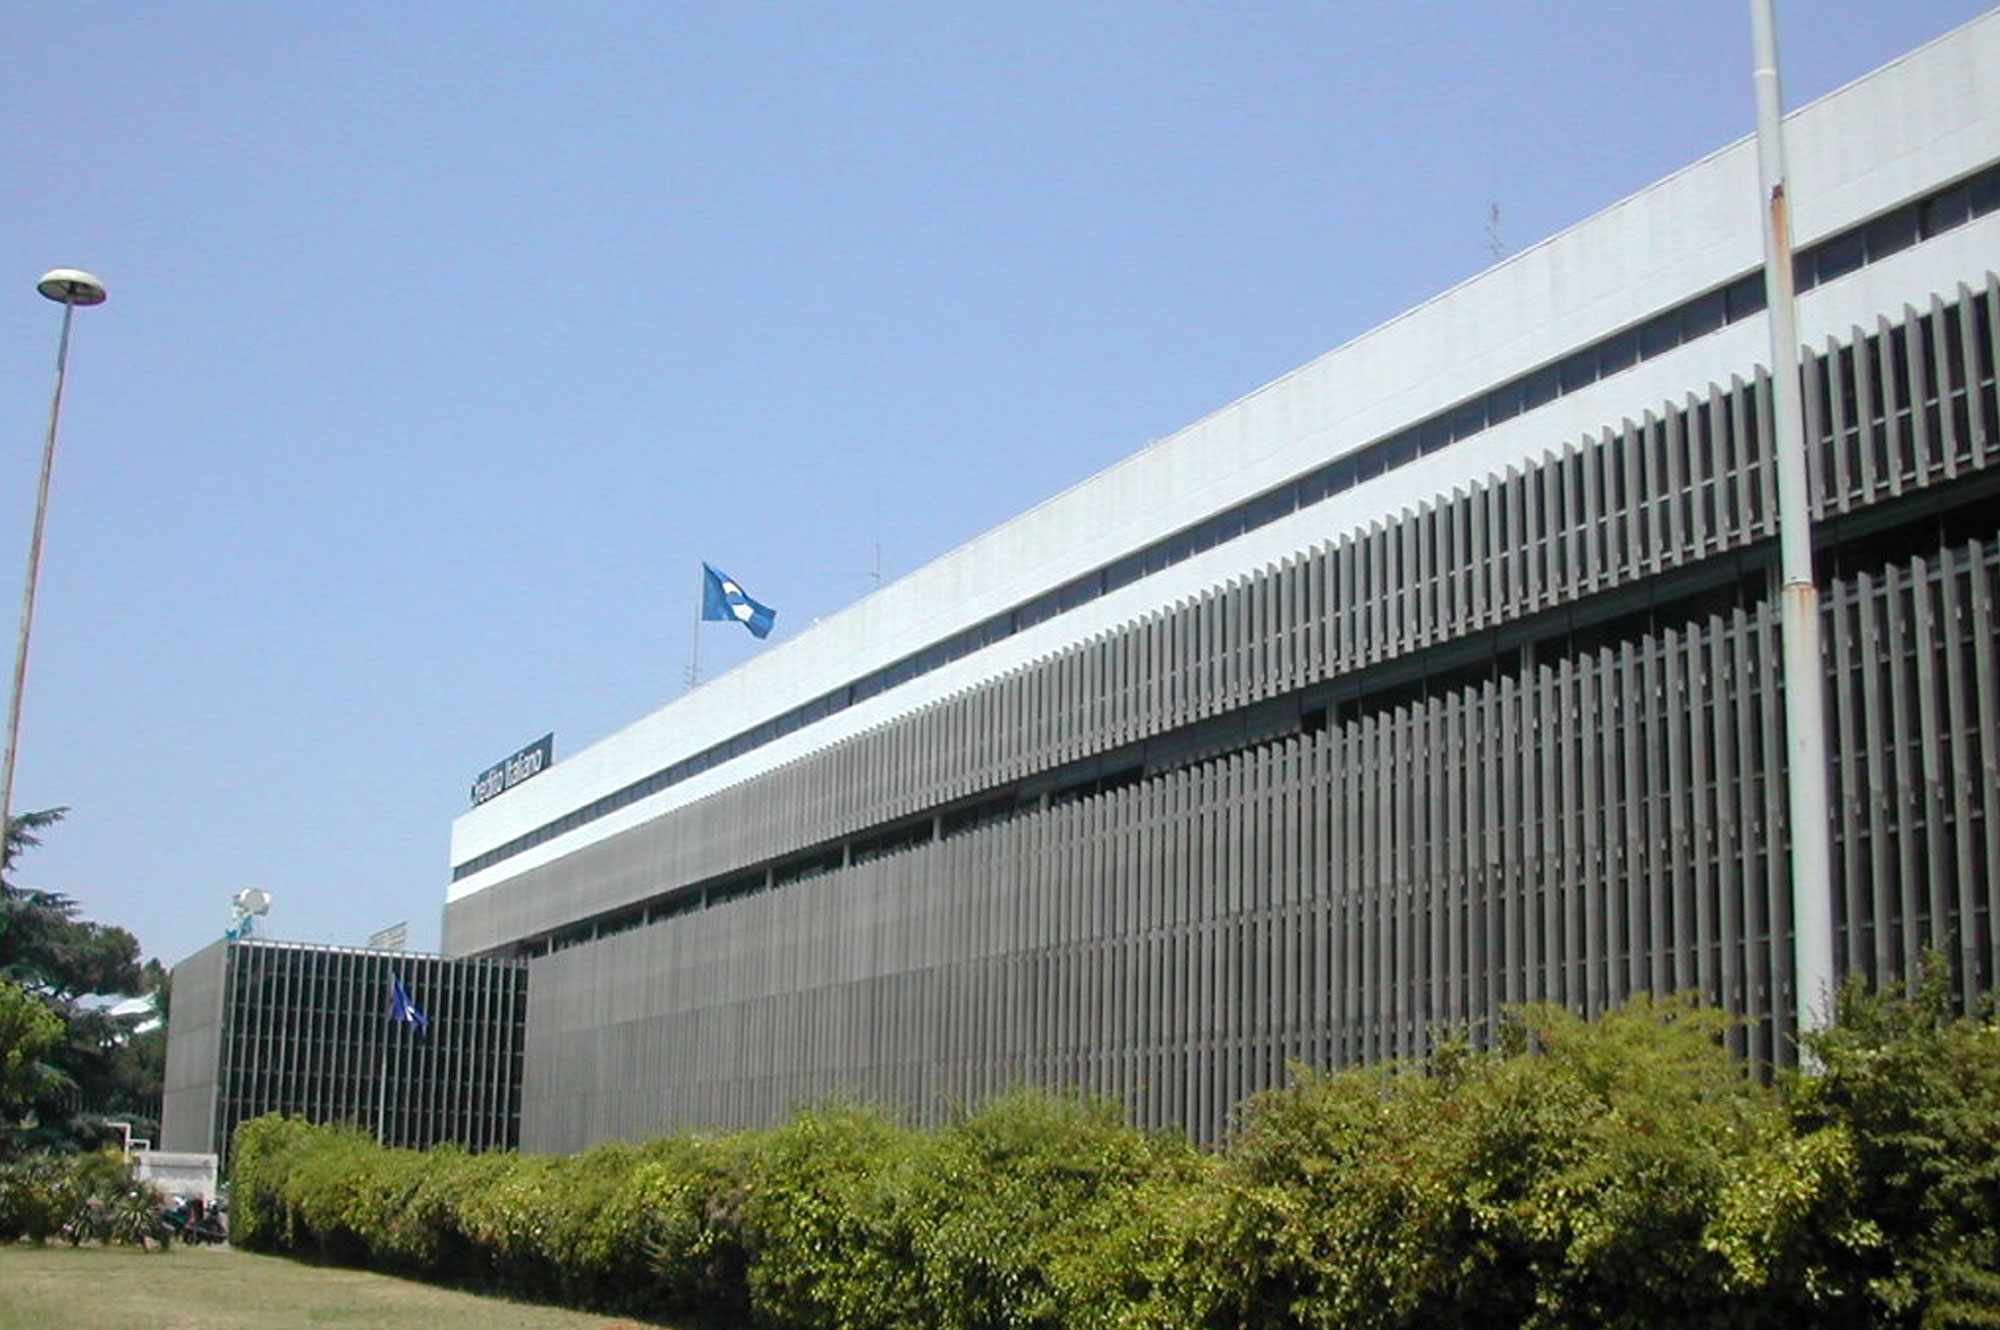 Opel Italia Headquarters